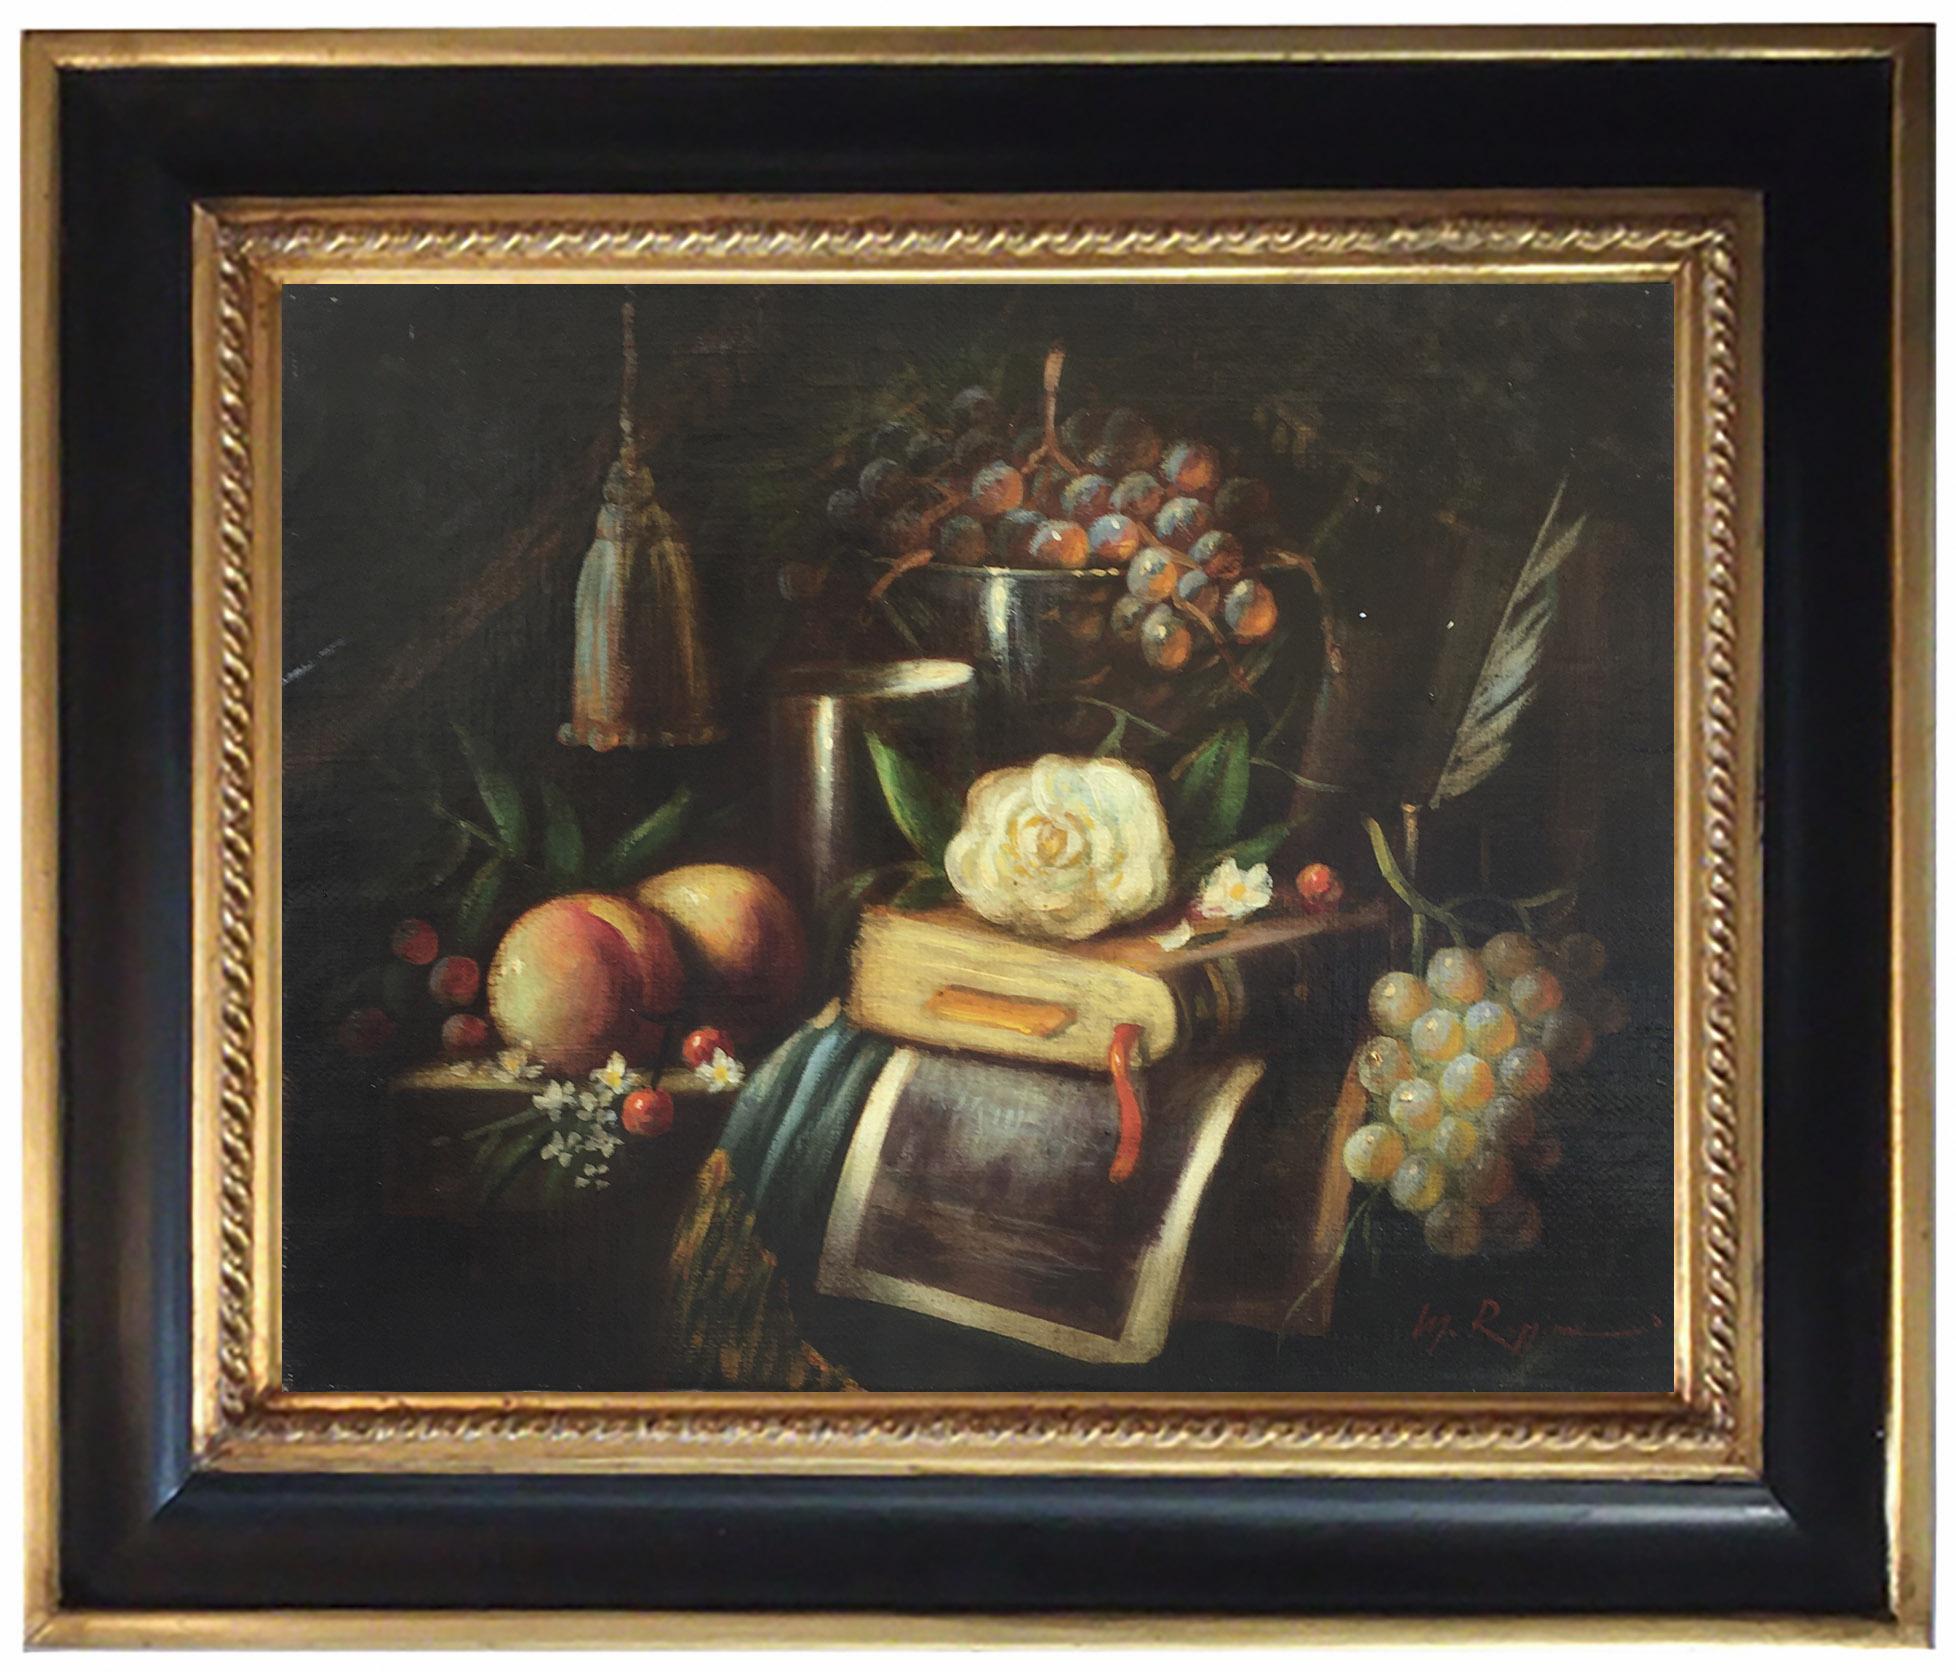 STILL LIFE - Öl auf Leinwand cm. 40x50 von Massimo Reggiani, Italien 2005
Das Stillleben, eine bildliche Darstellung von Lebensmitteln, Gegenständen oder unbelebten Objekten, war eine der Kunstgattungen, die sich im siebzehnten Jahrhundert